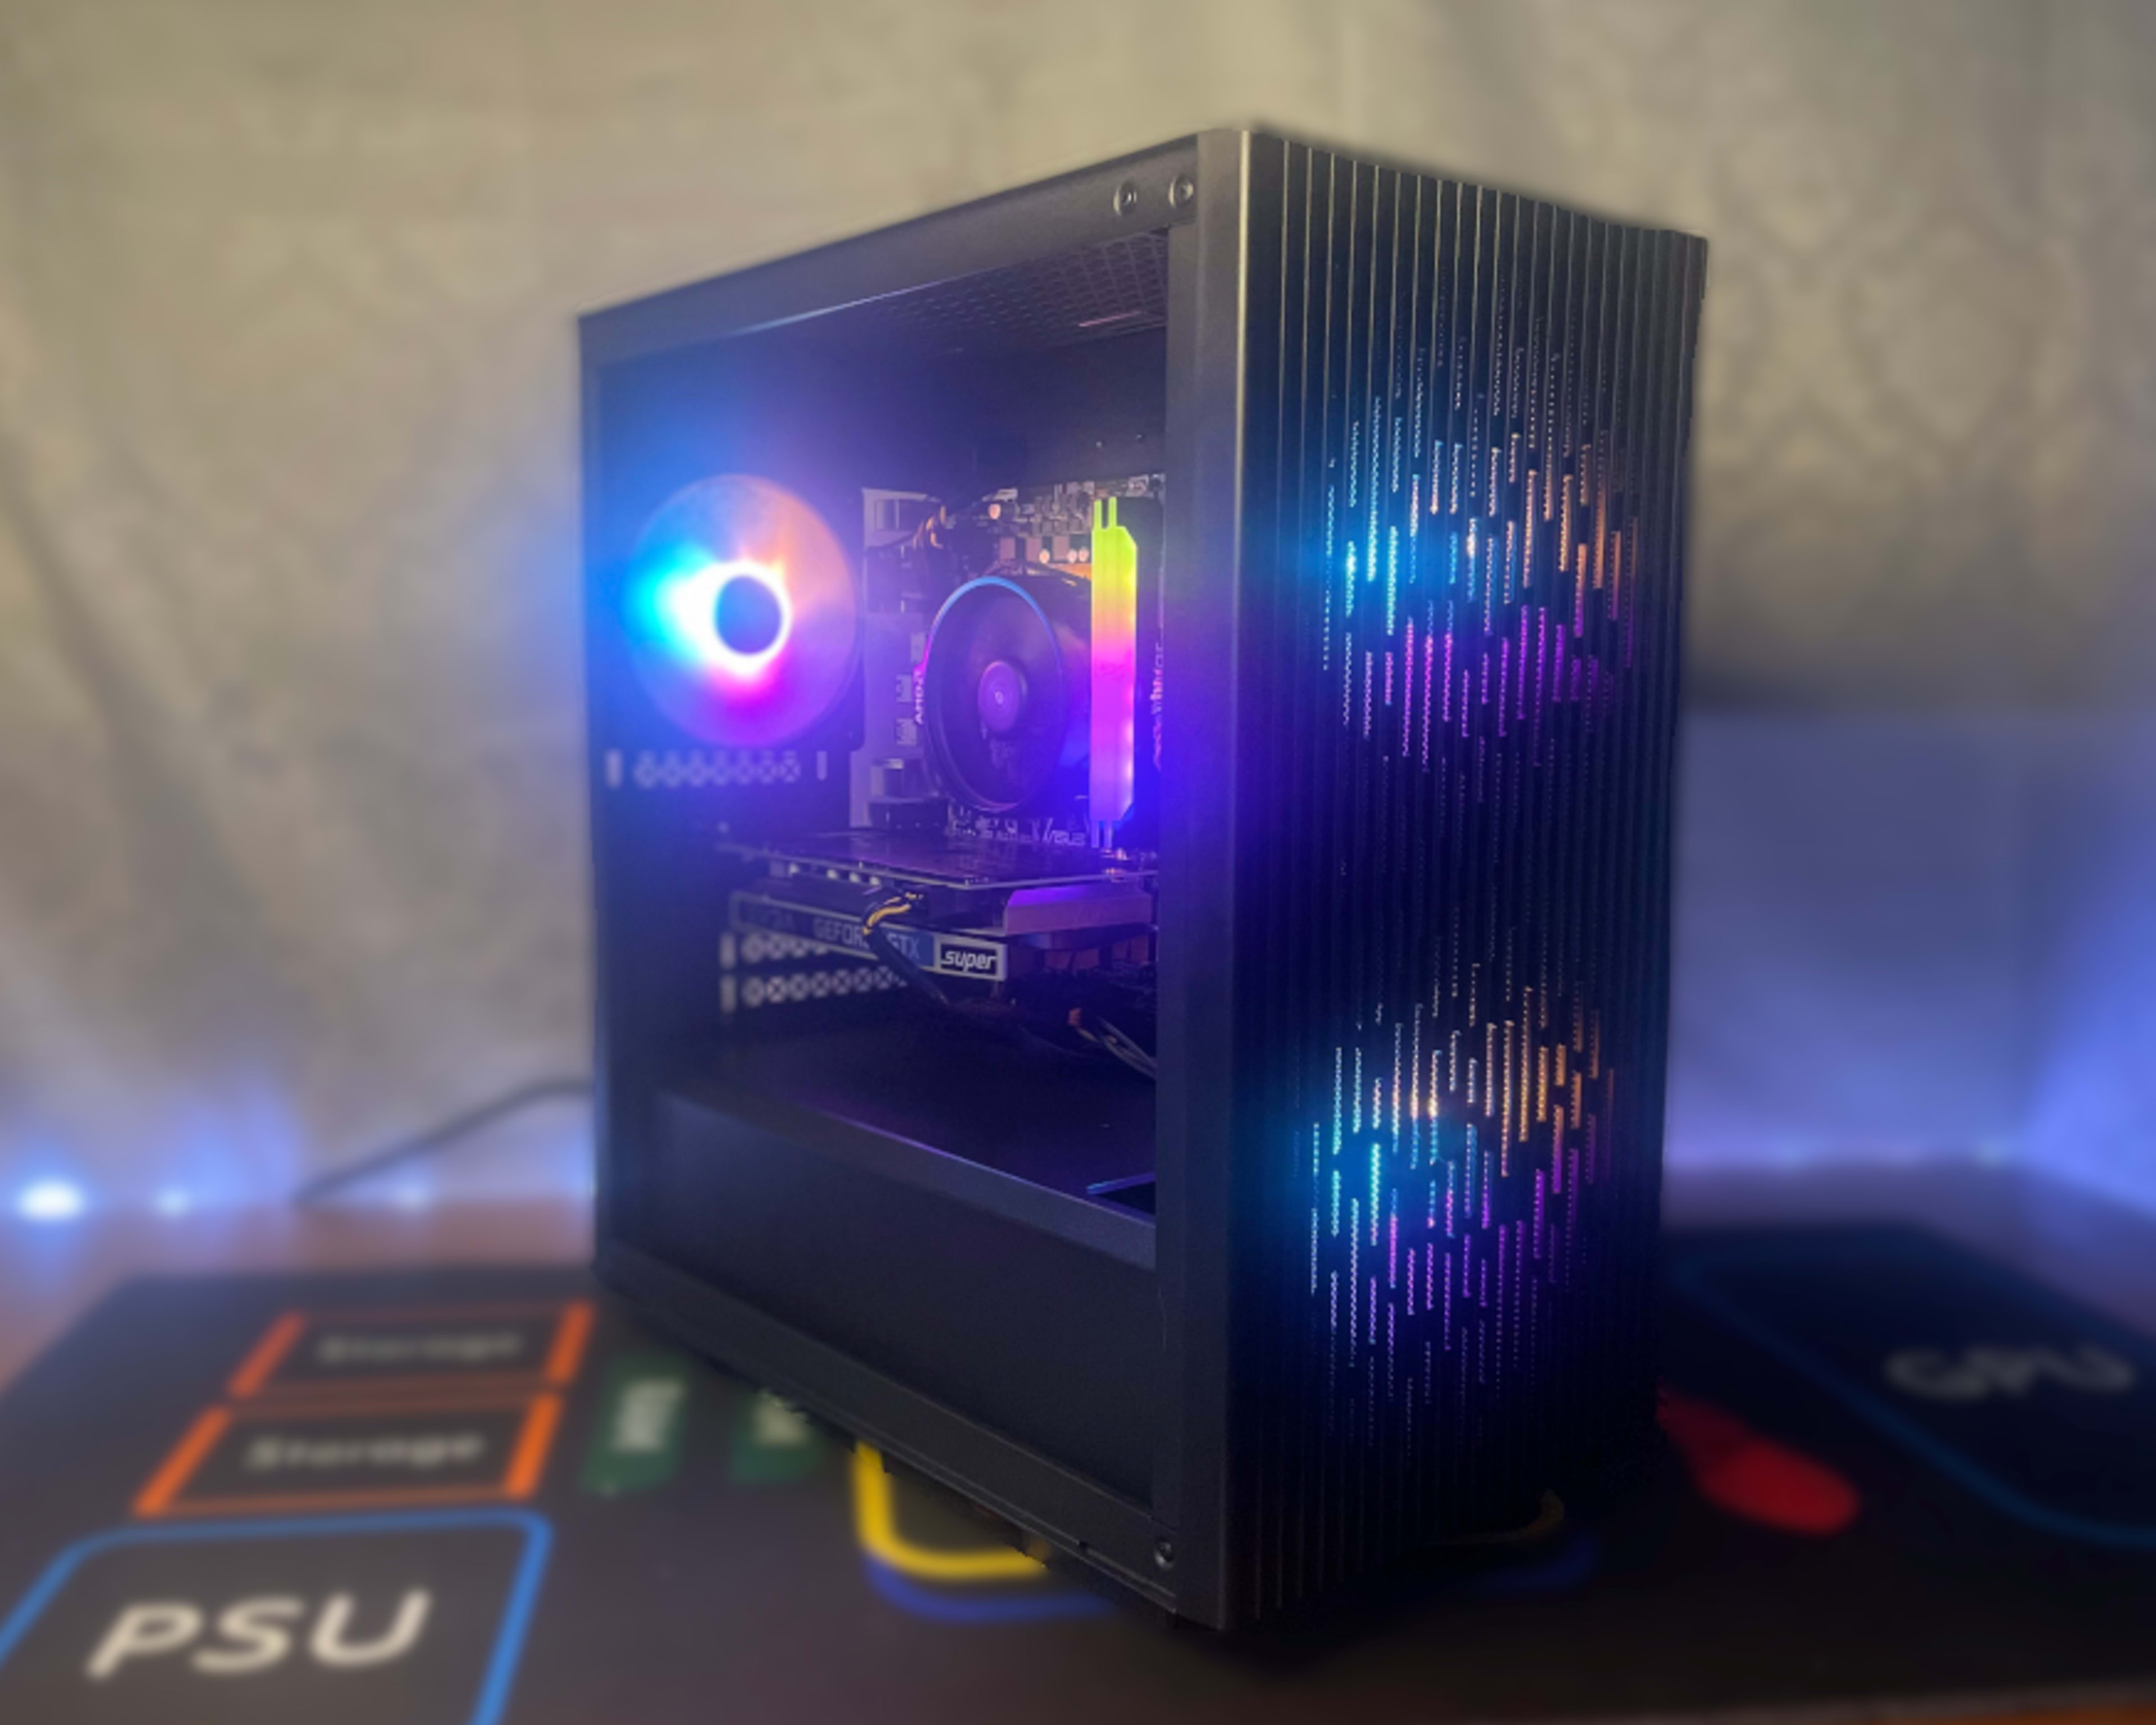 PRISM - Entry-Level Gaming PC - Ryzen 5 2600x & GeForce GTX 1660 SUPER